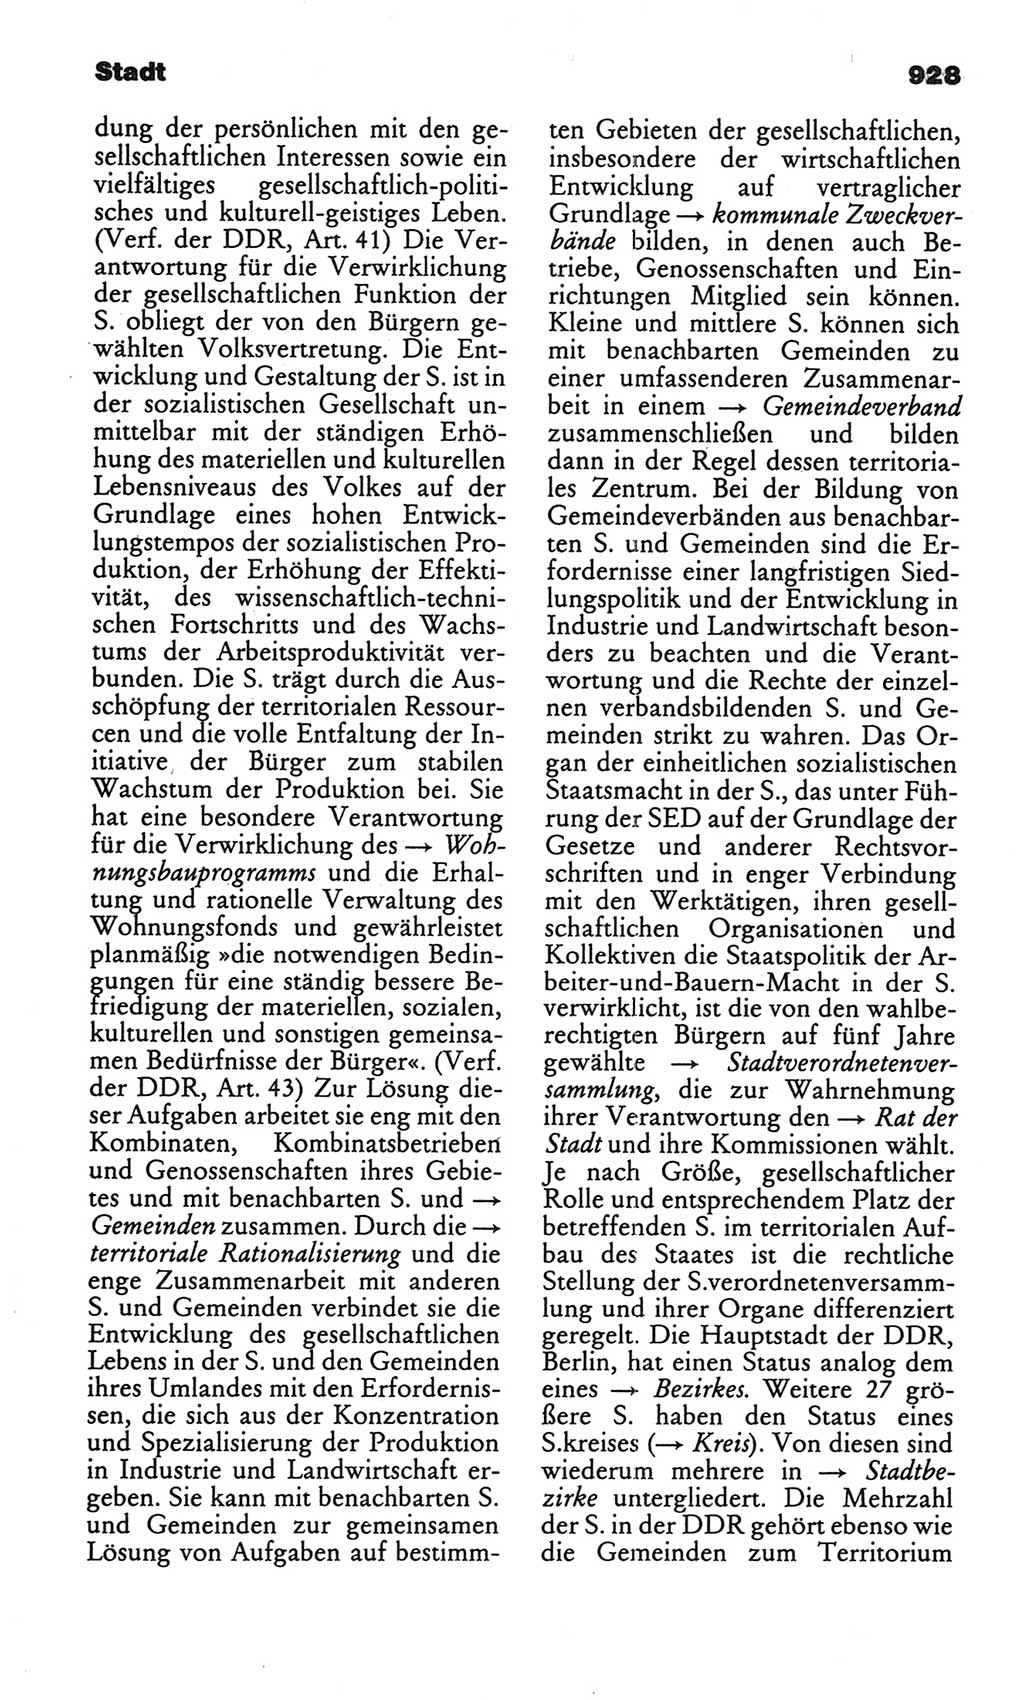 Kleines politisches Wörterbuch [Deutsche Demokratische Republik (DDR)] 1986, Seite 928 (Kl. pol. Wb. DDR 1986, S. 928)